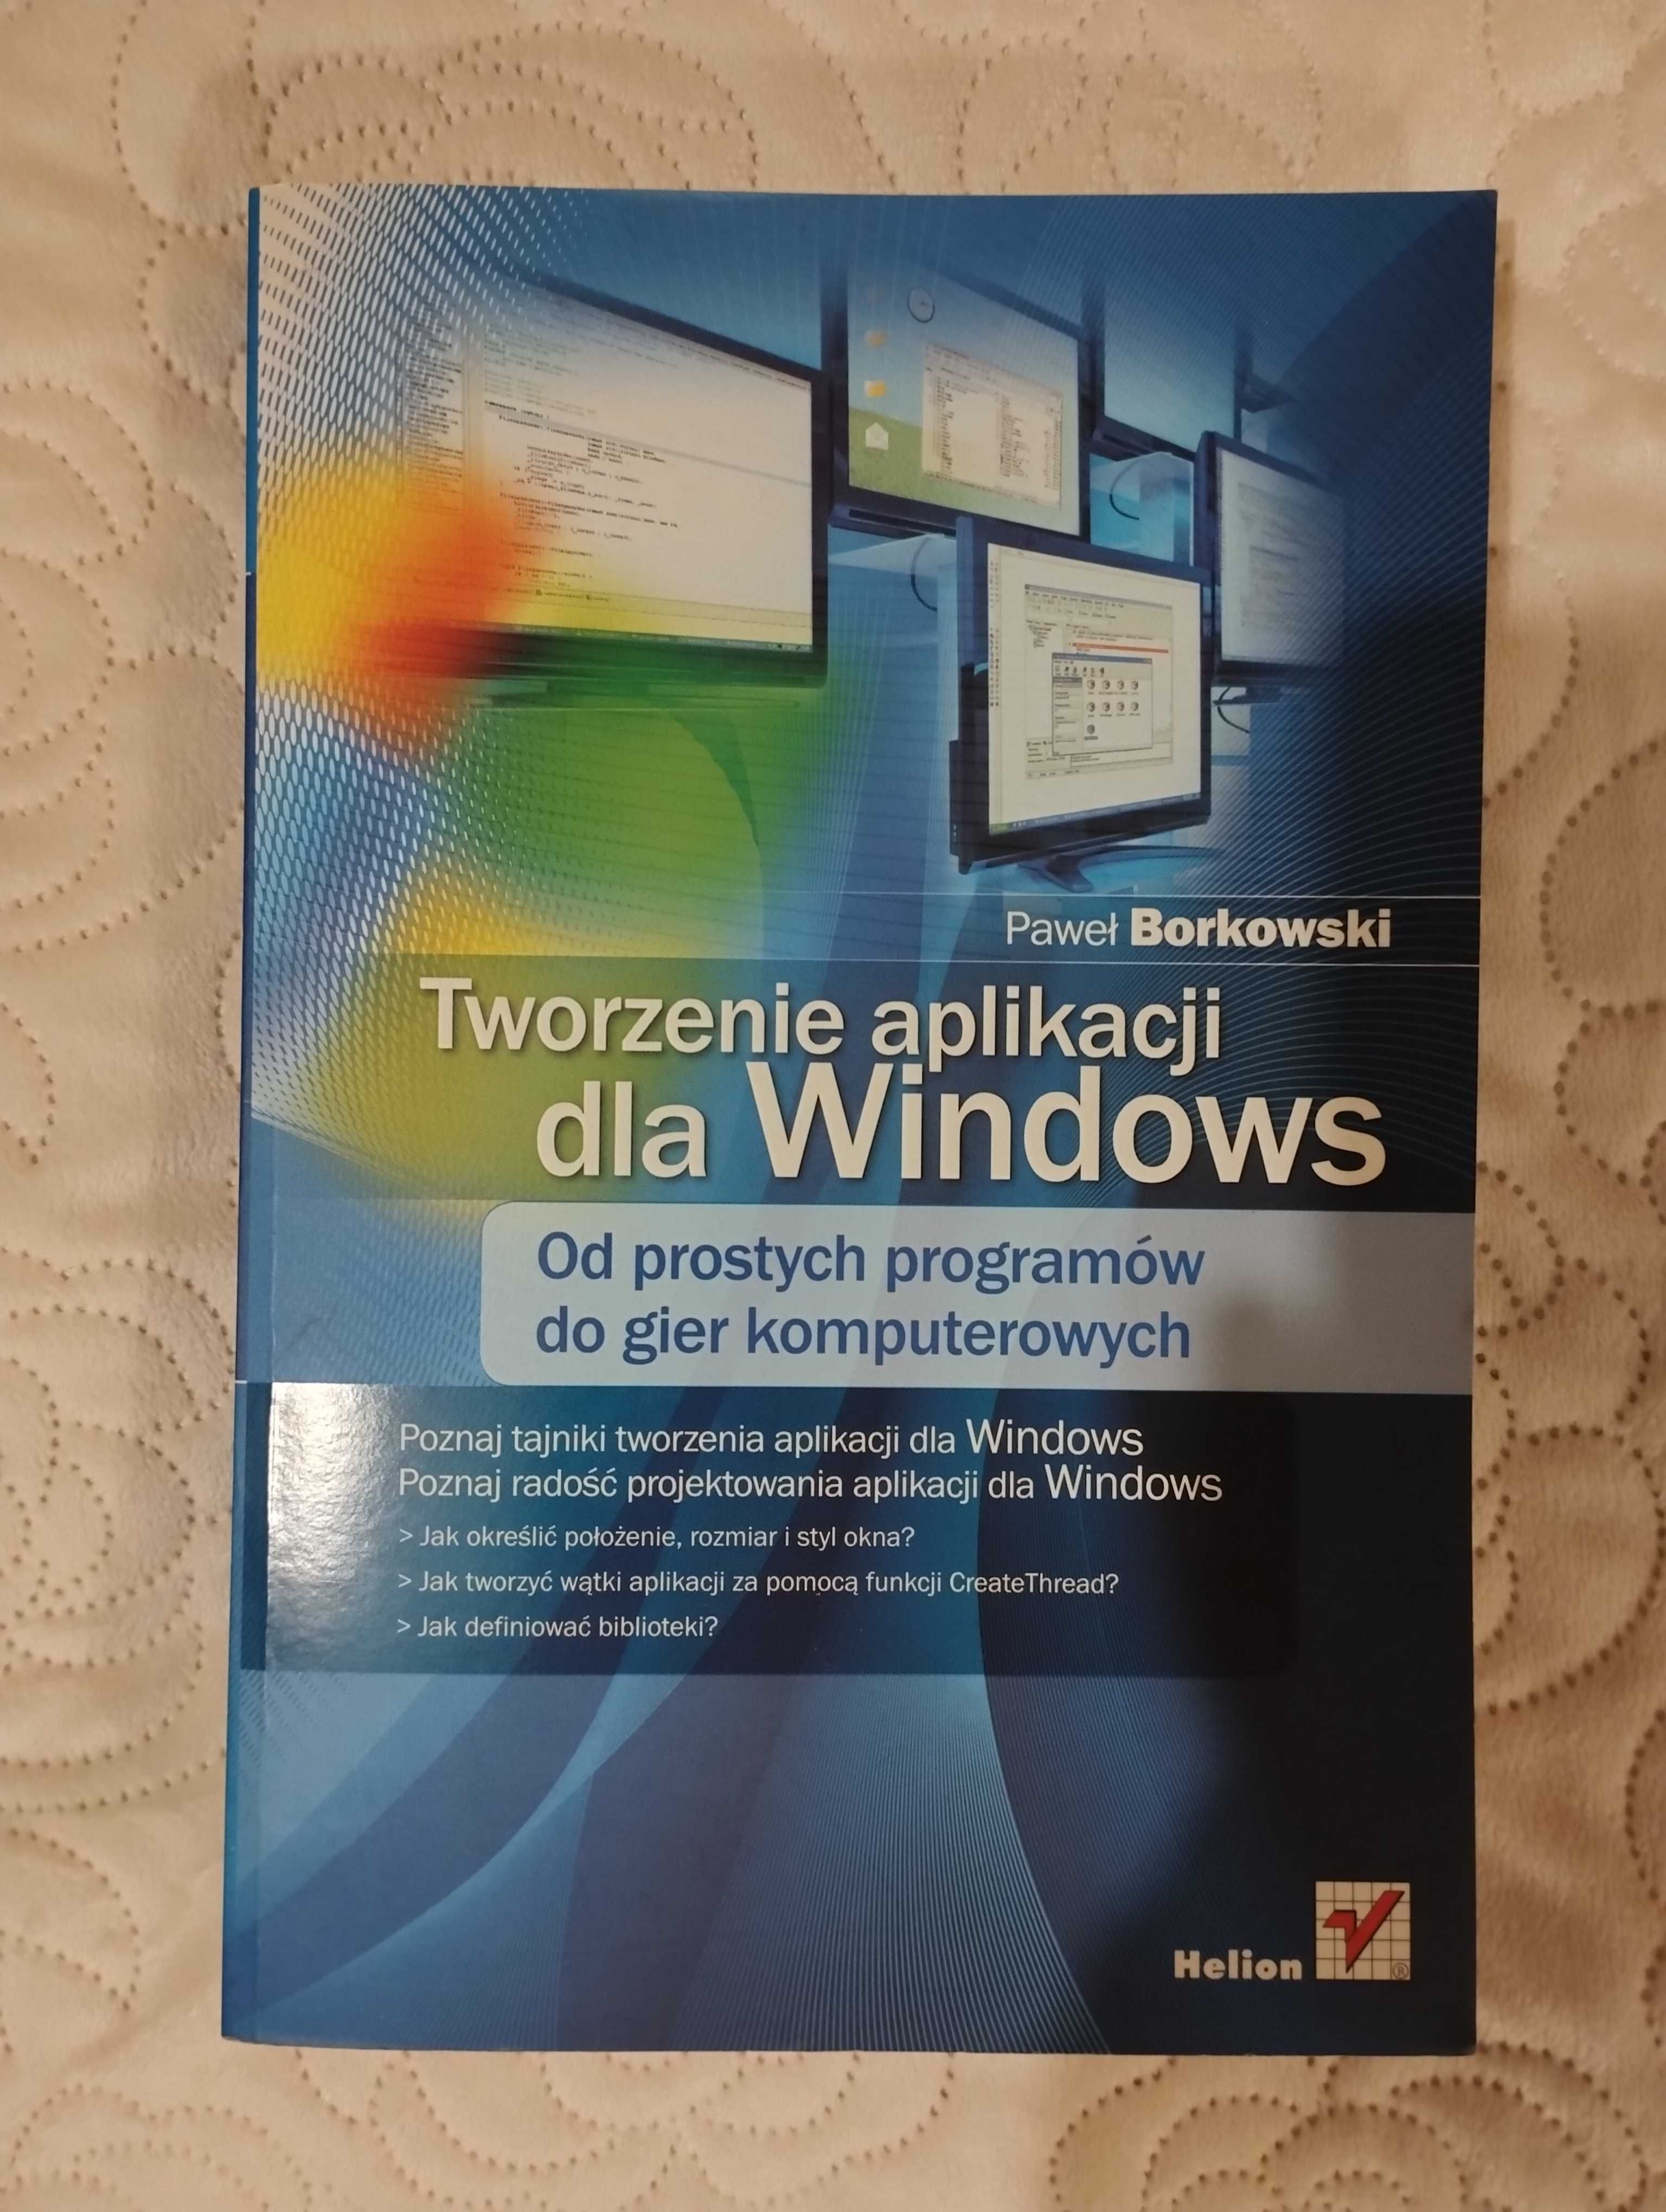 Tworzenie aplikacji dla Windows z płytą, 2008